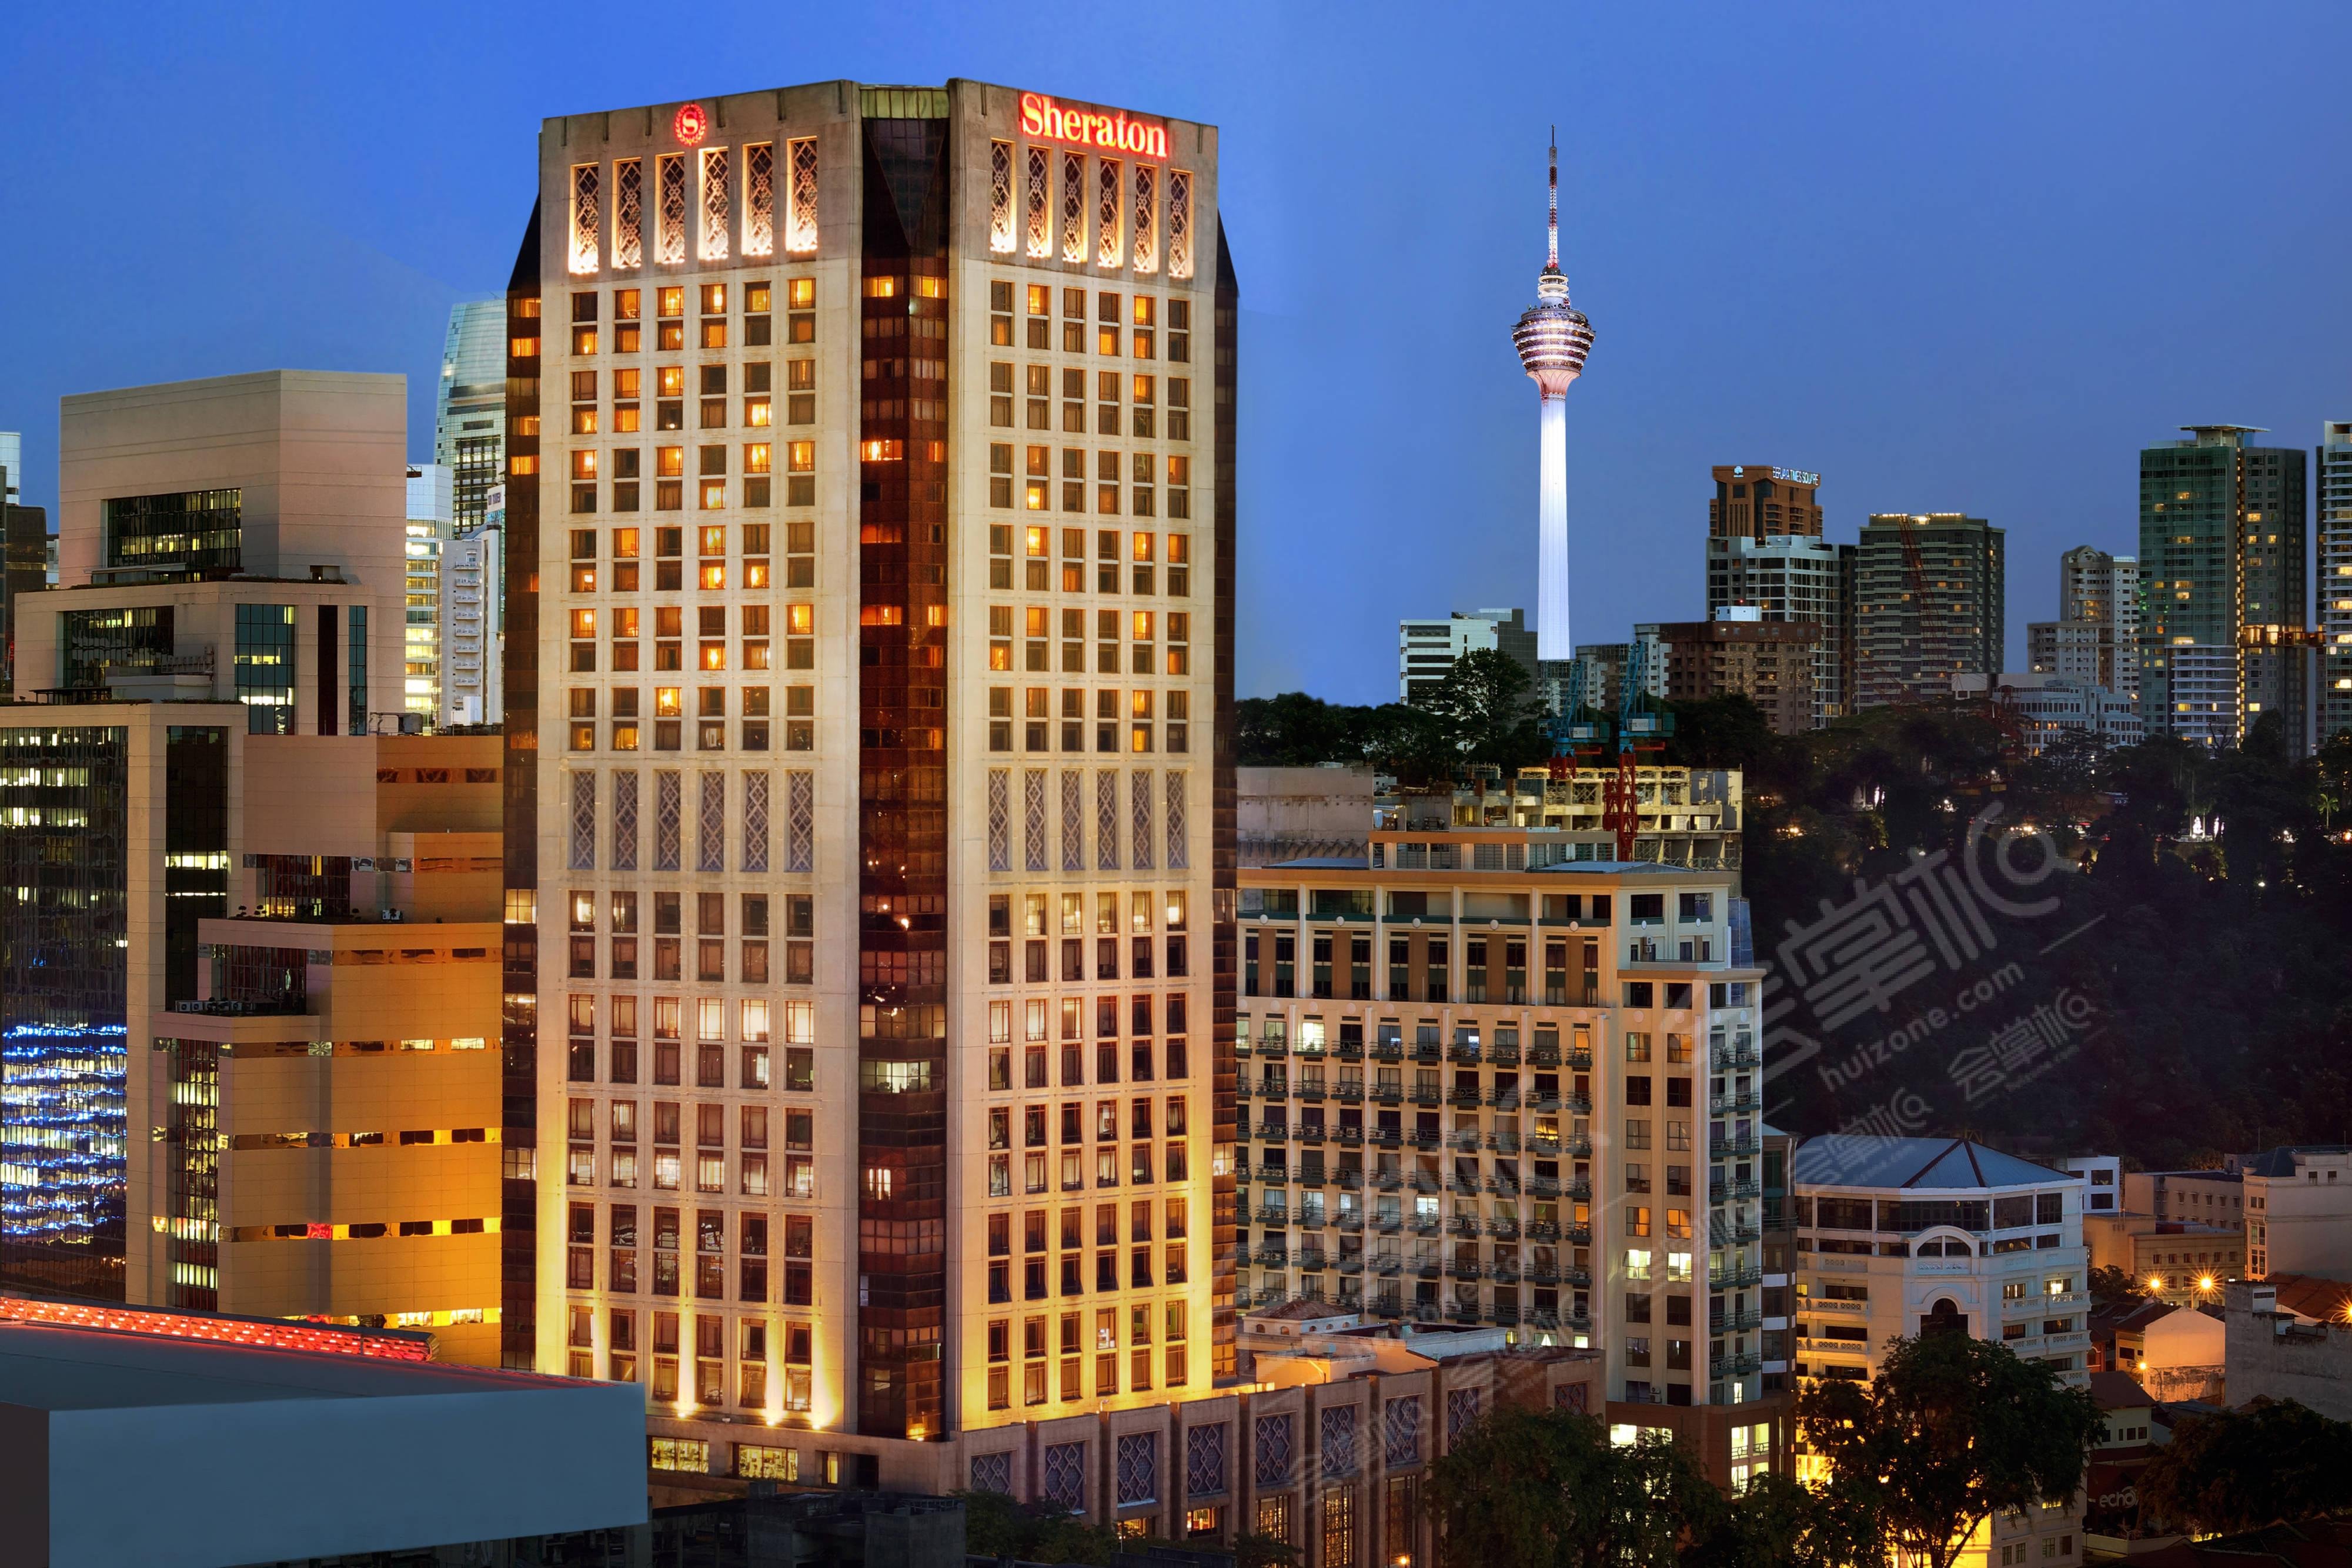 吉隆坡五星级酒店最大容纳400人的会议场地|吉隆坡喜来登帝国酒店(Sheraton Imperial Kuala Lumpur Hotel)的价格与联系方式